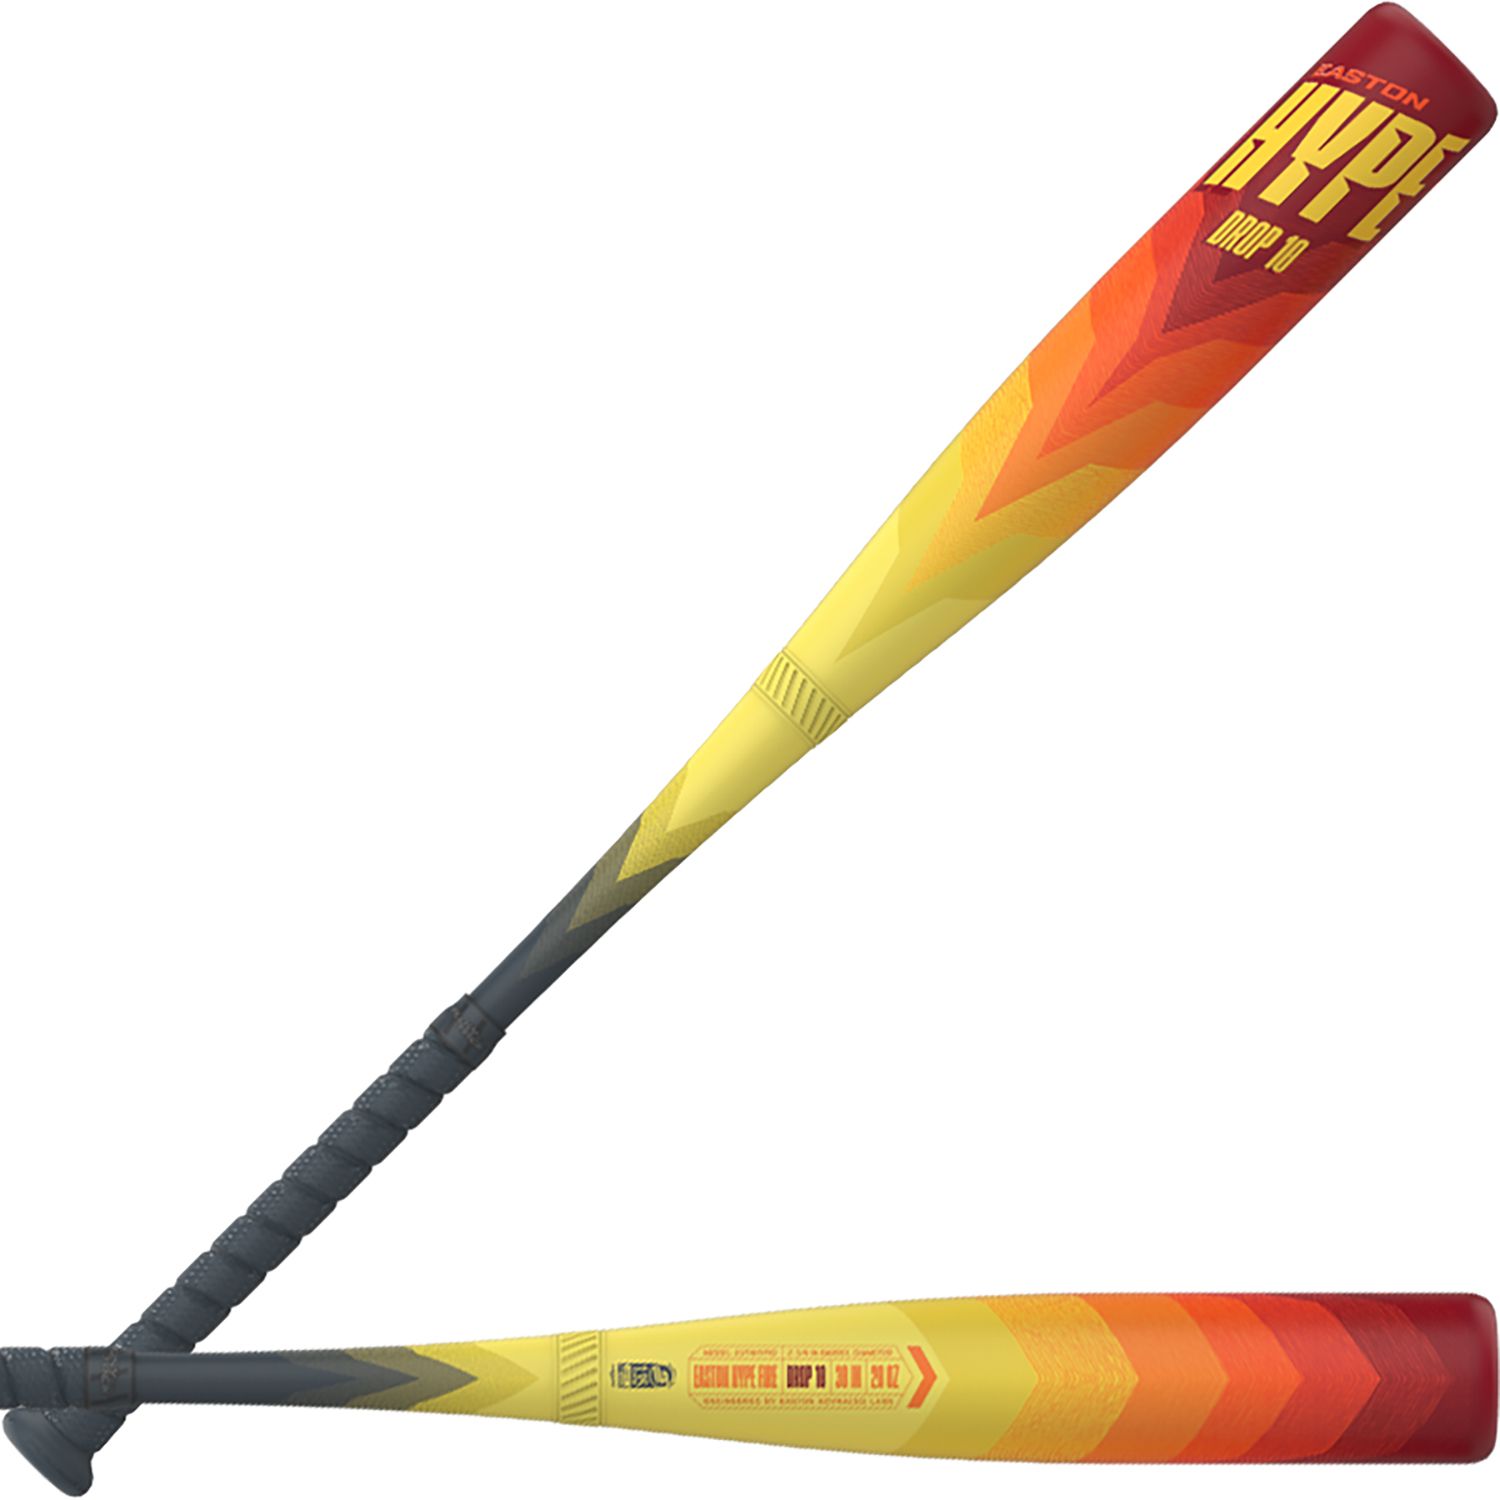 Best baseball bat for beginners